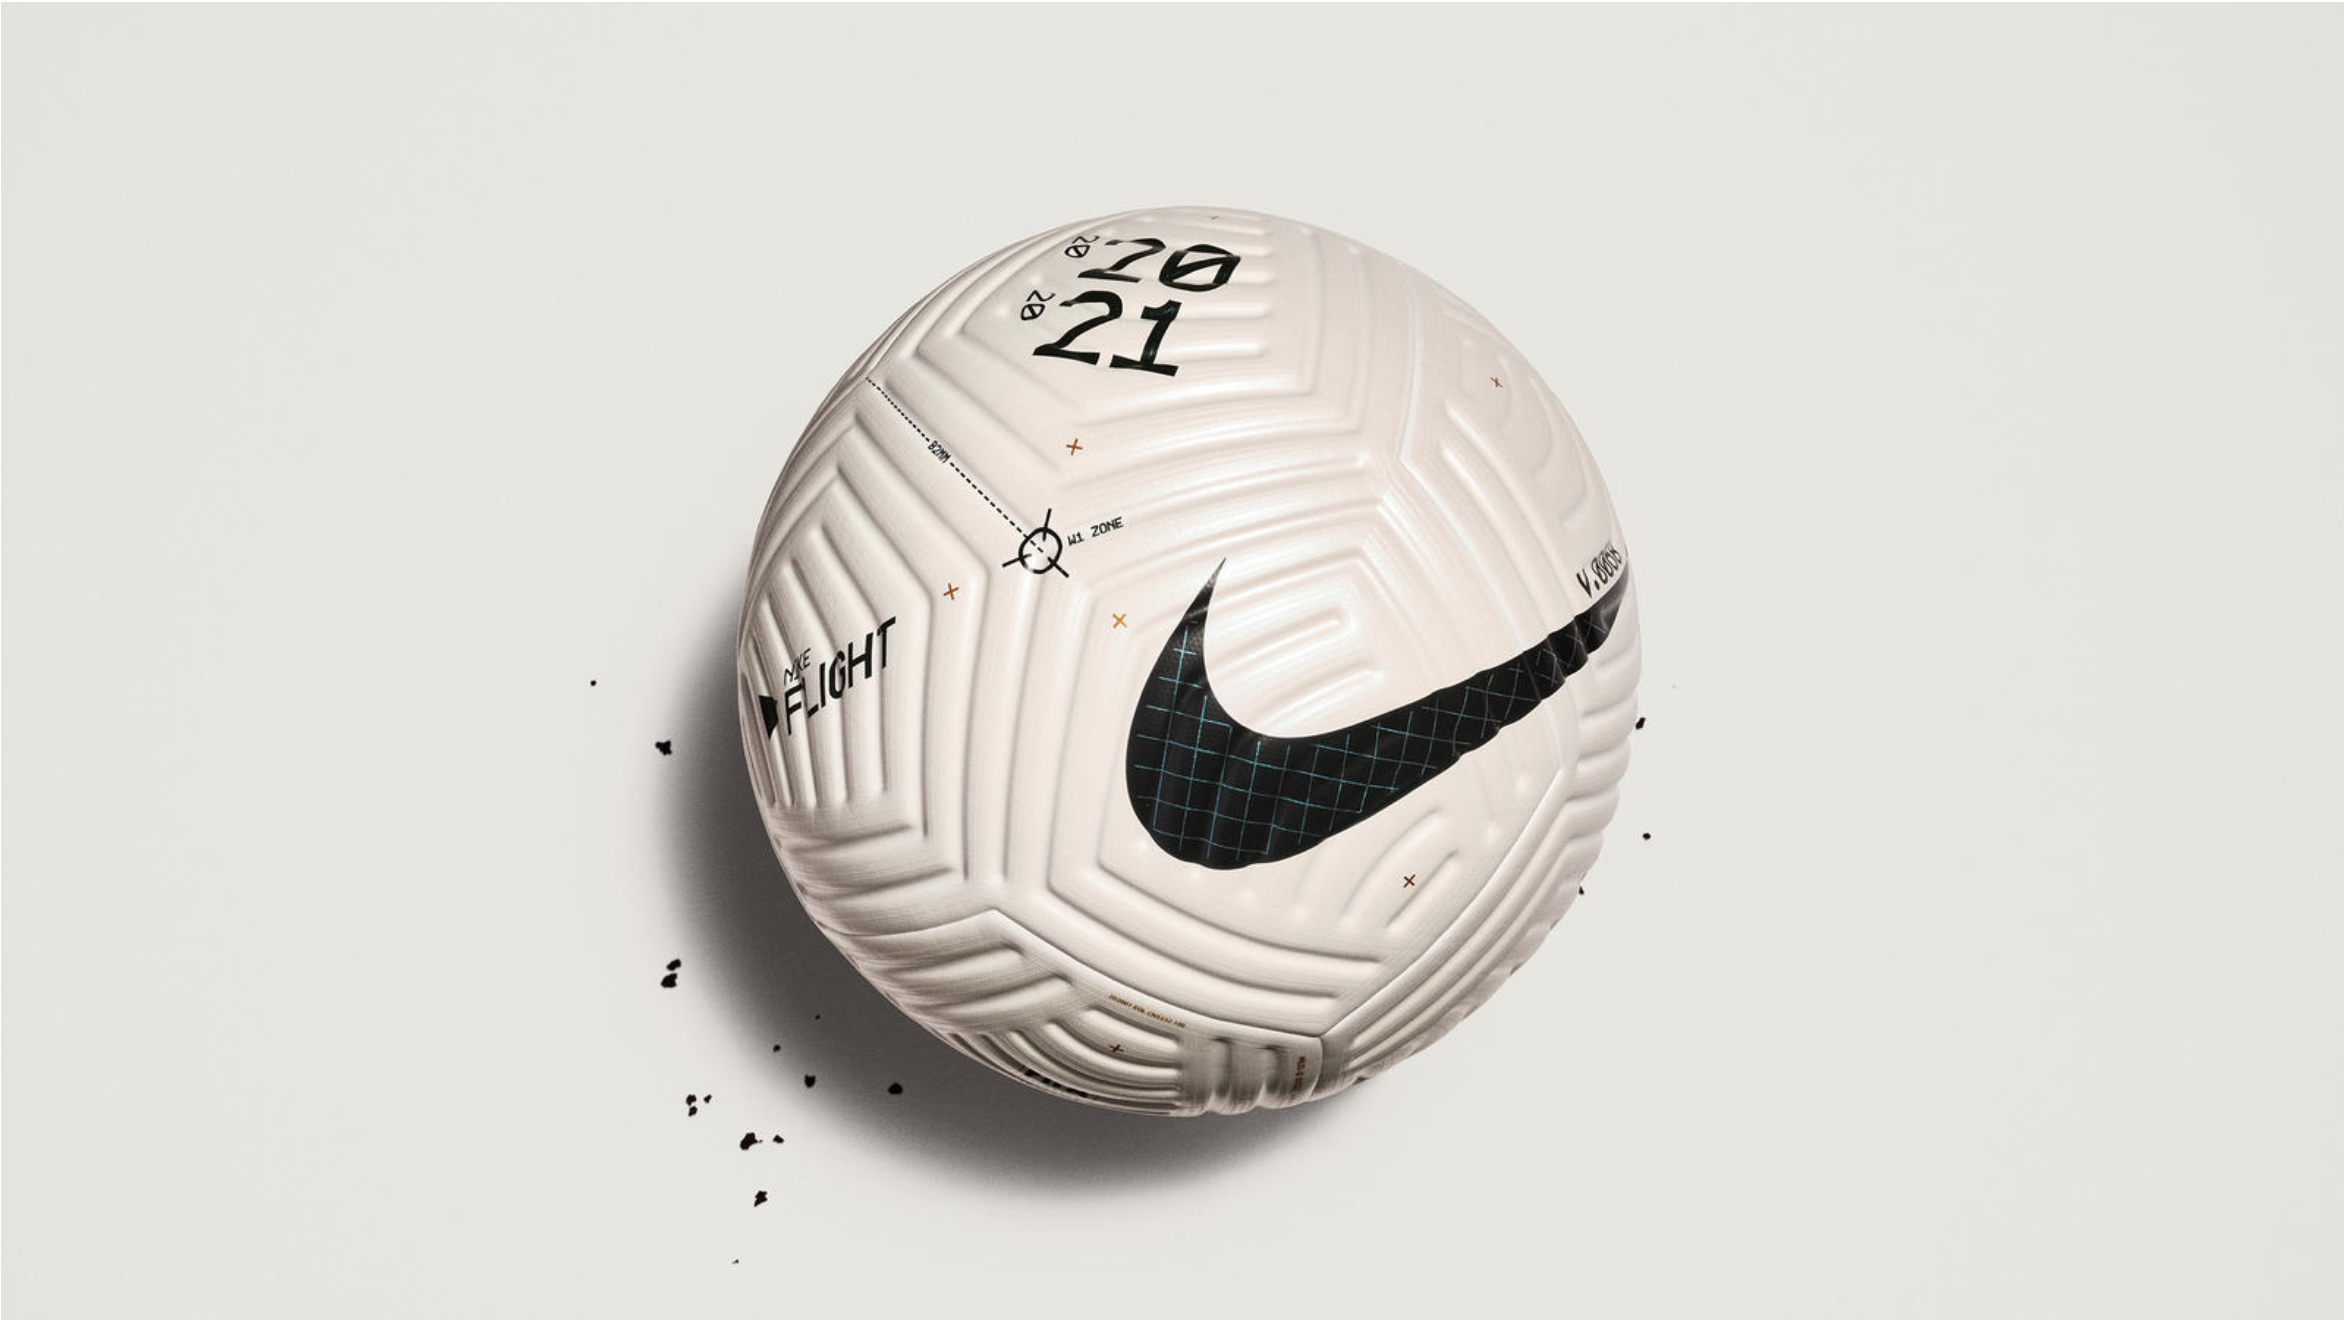 Nouveau ballon Nike Flight : À quoi ressembleront les versions Premier  League et Série A ? 